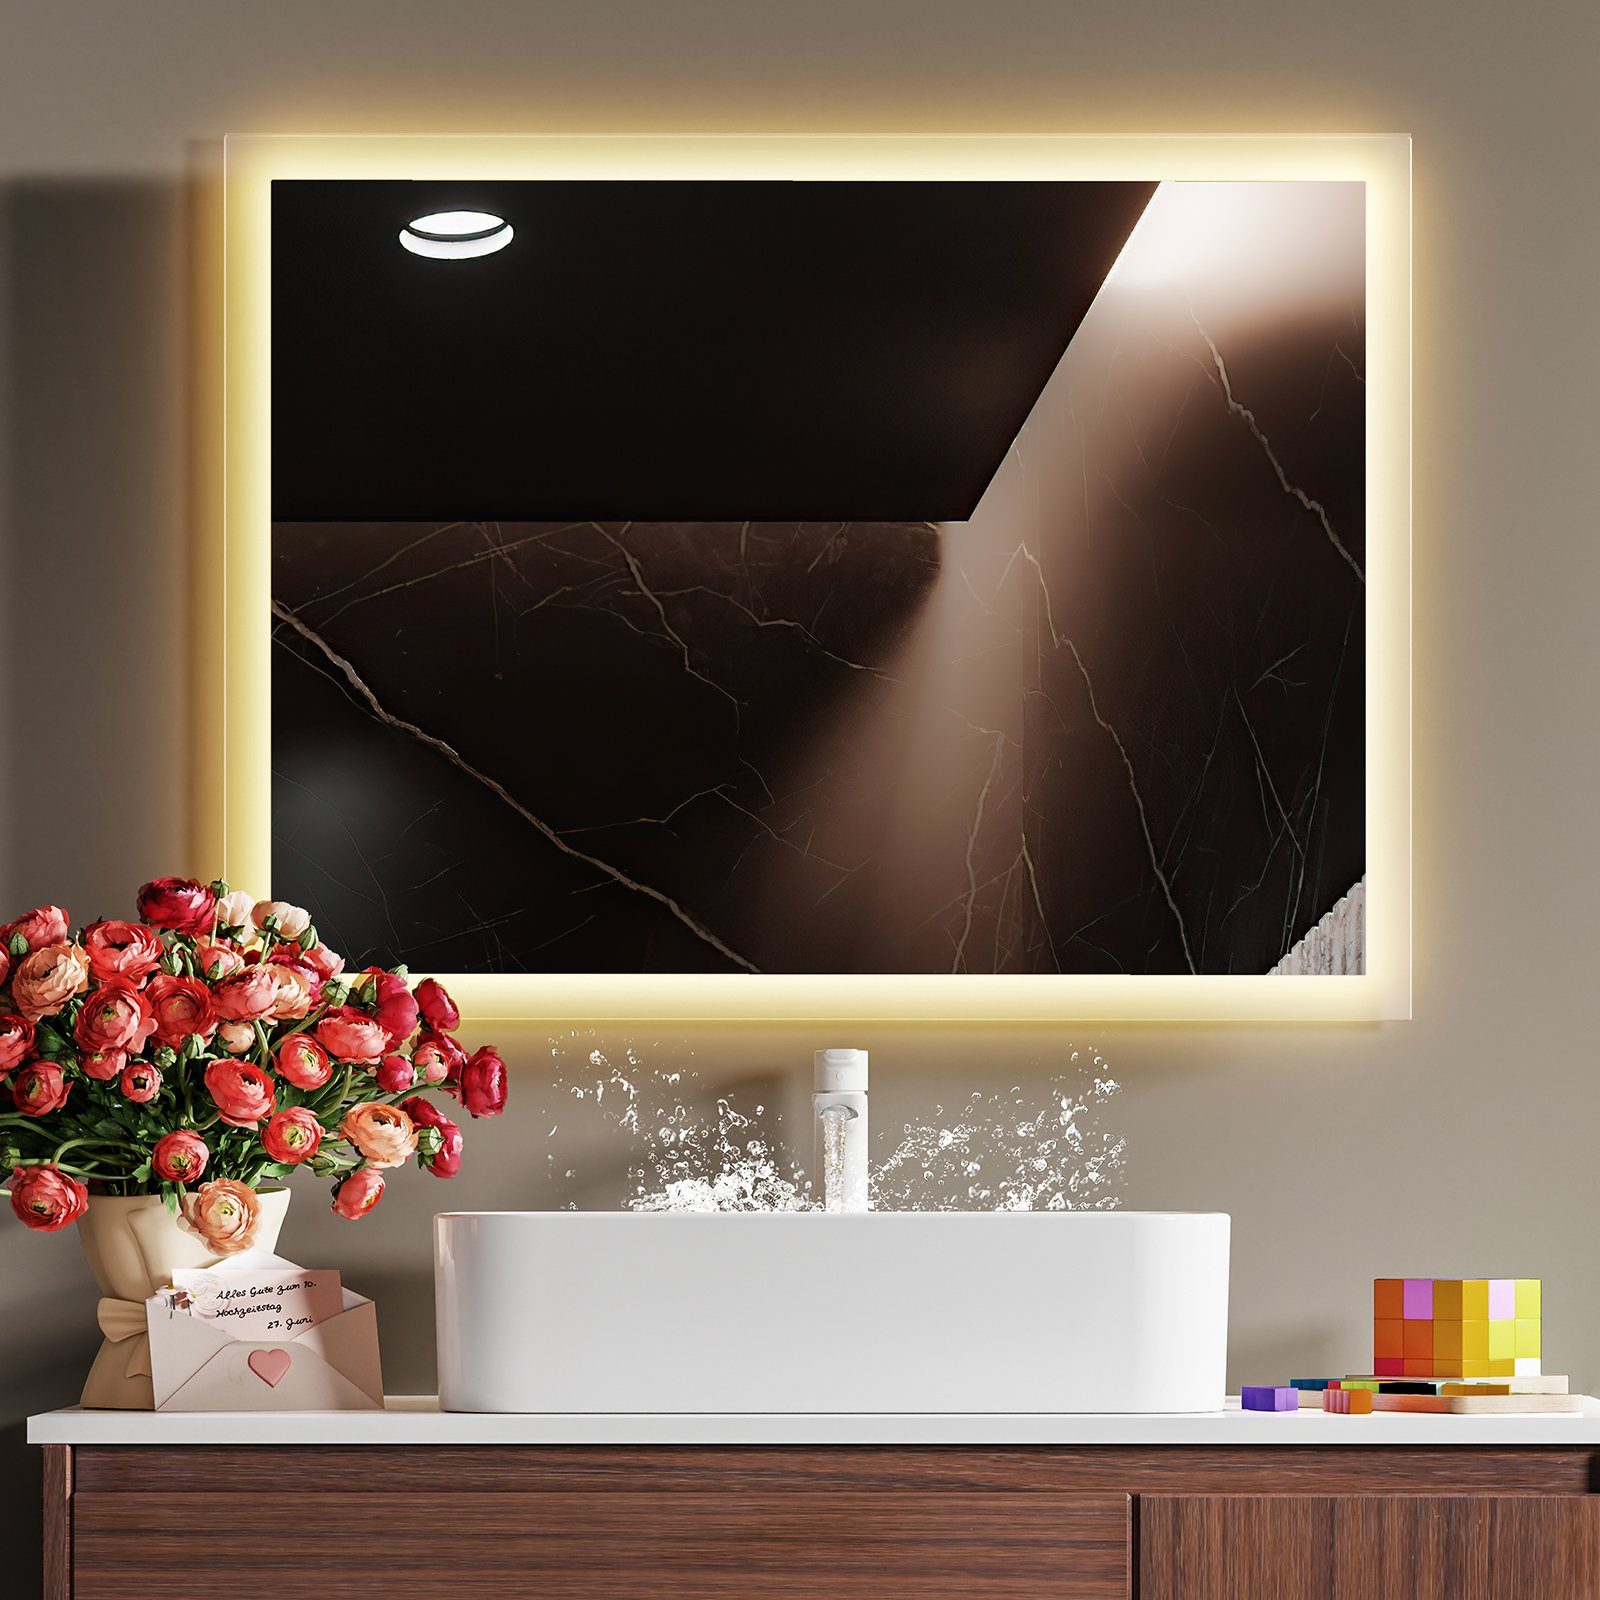 mit Warmweiß Lichtspiegel IP44 Badspiegel Wandspiegel Wandschalter, 3000K LED EMKE Montage Energiesparend Vertikal/Horizontal 80x60cm Beleuchtung